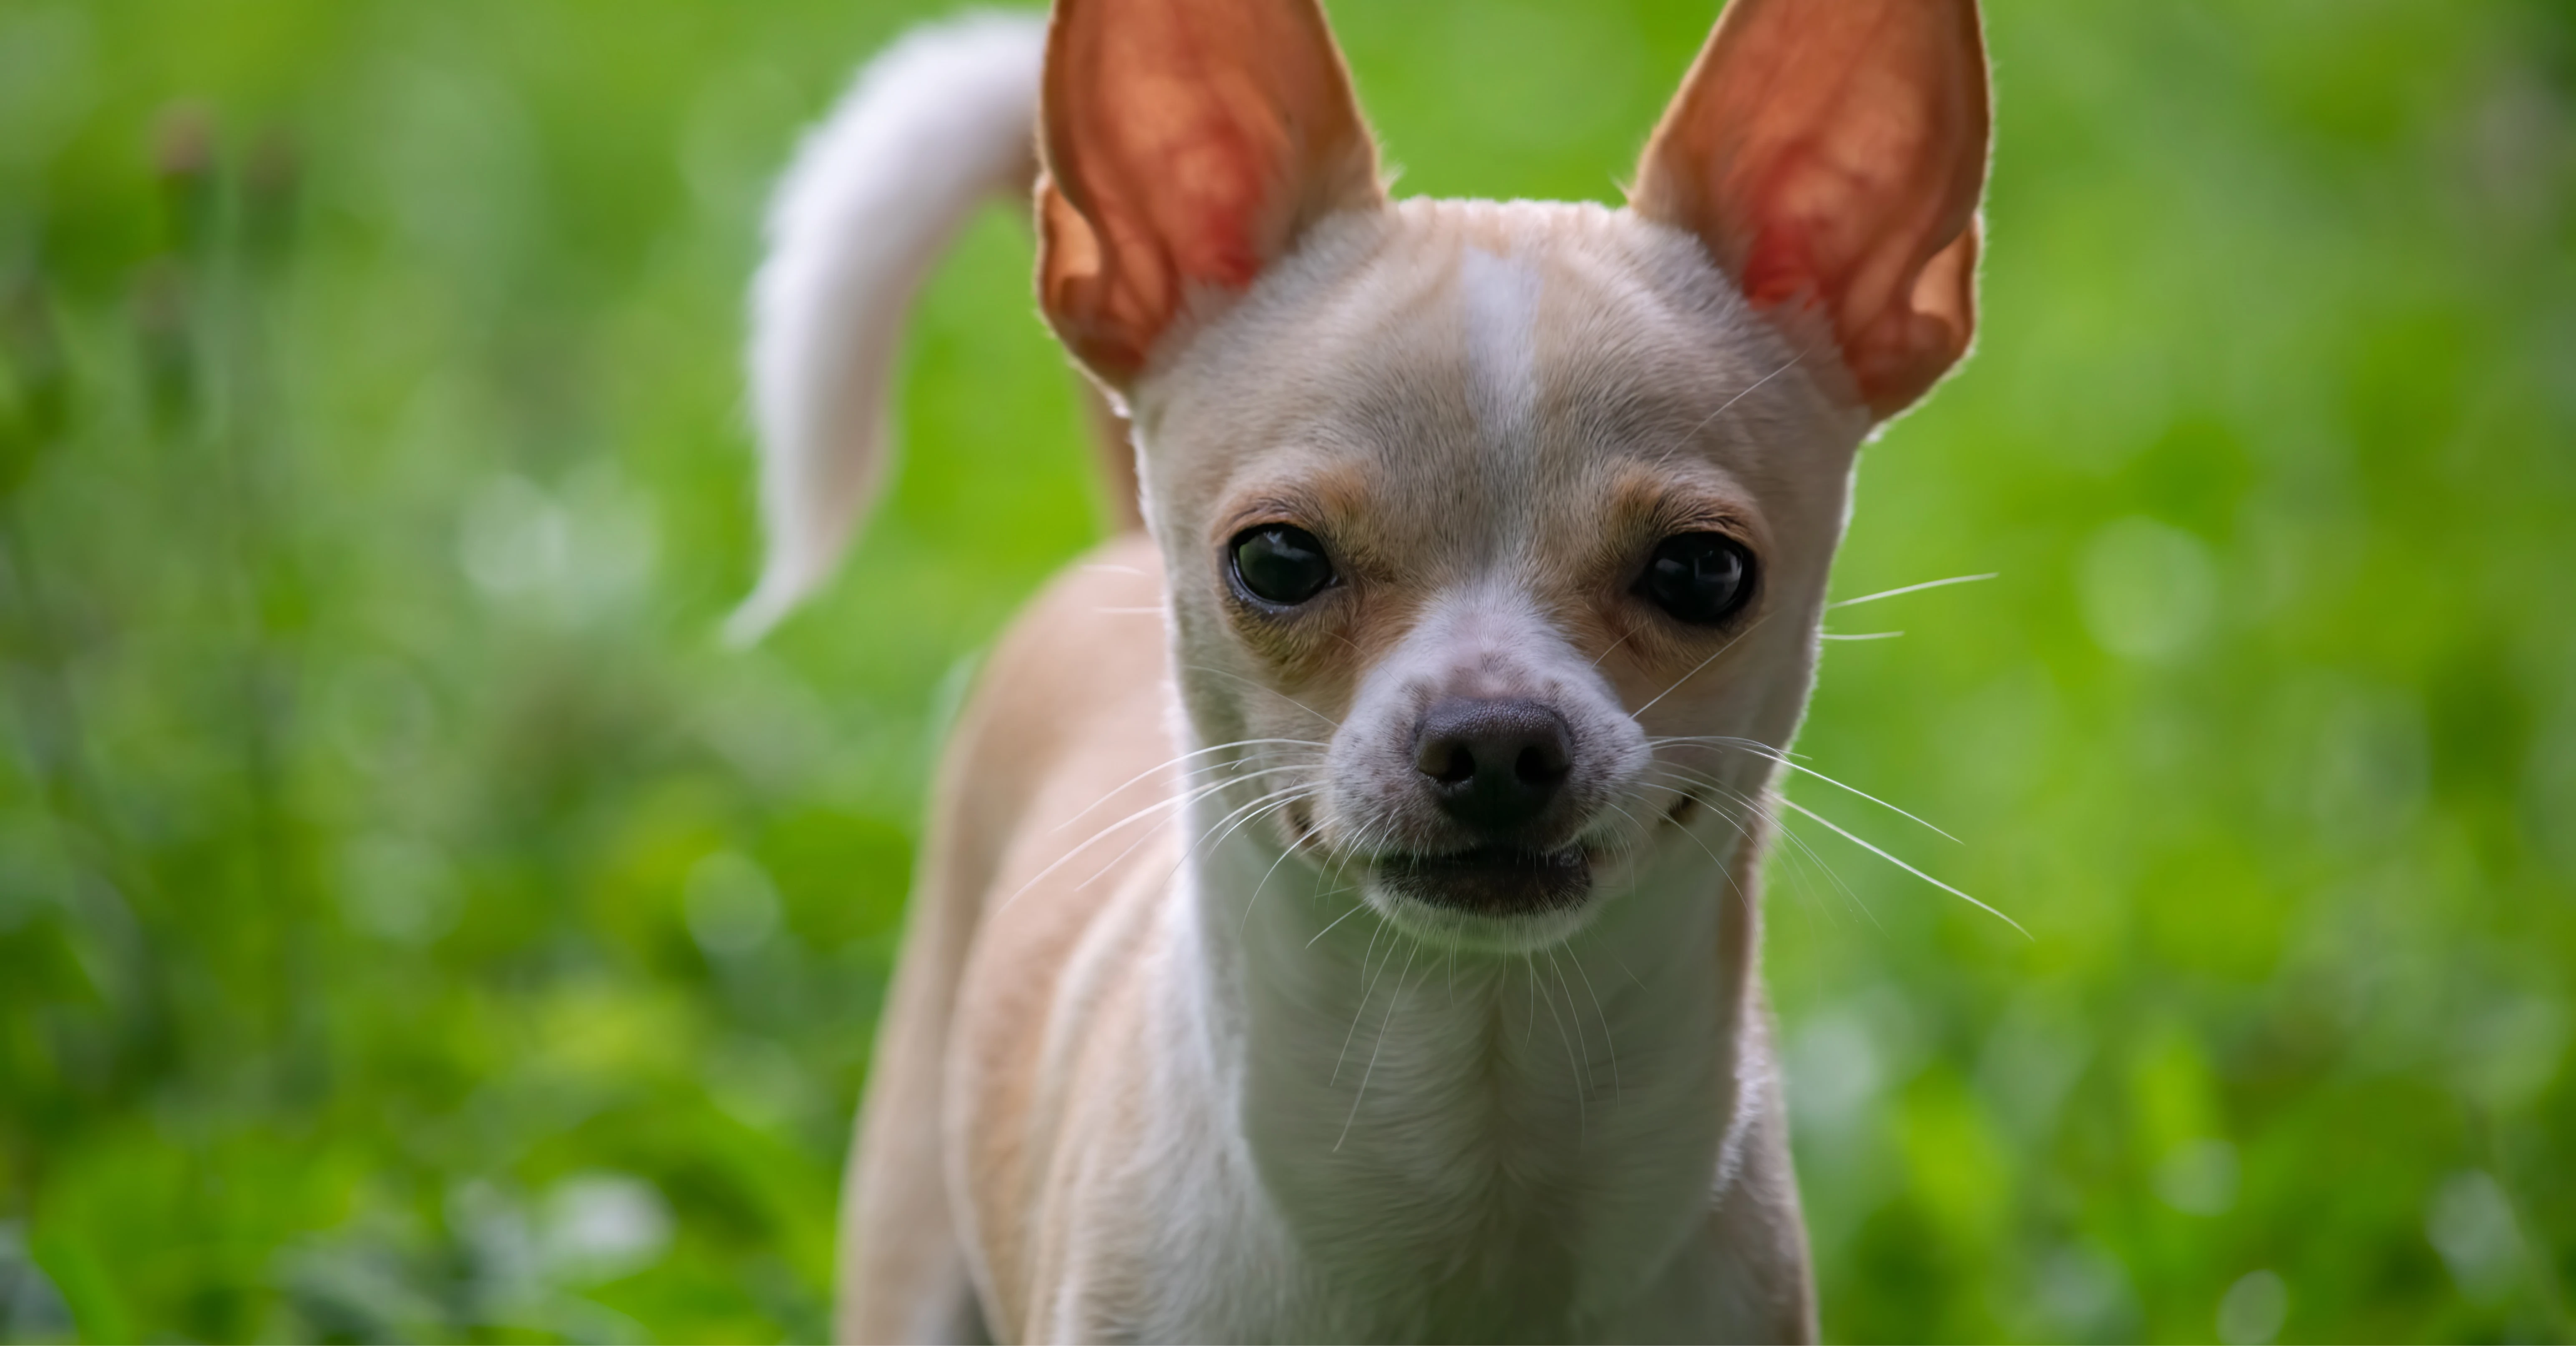 Chihuahua Photo on Unsplash